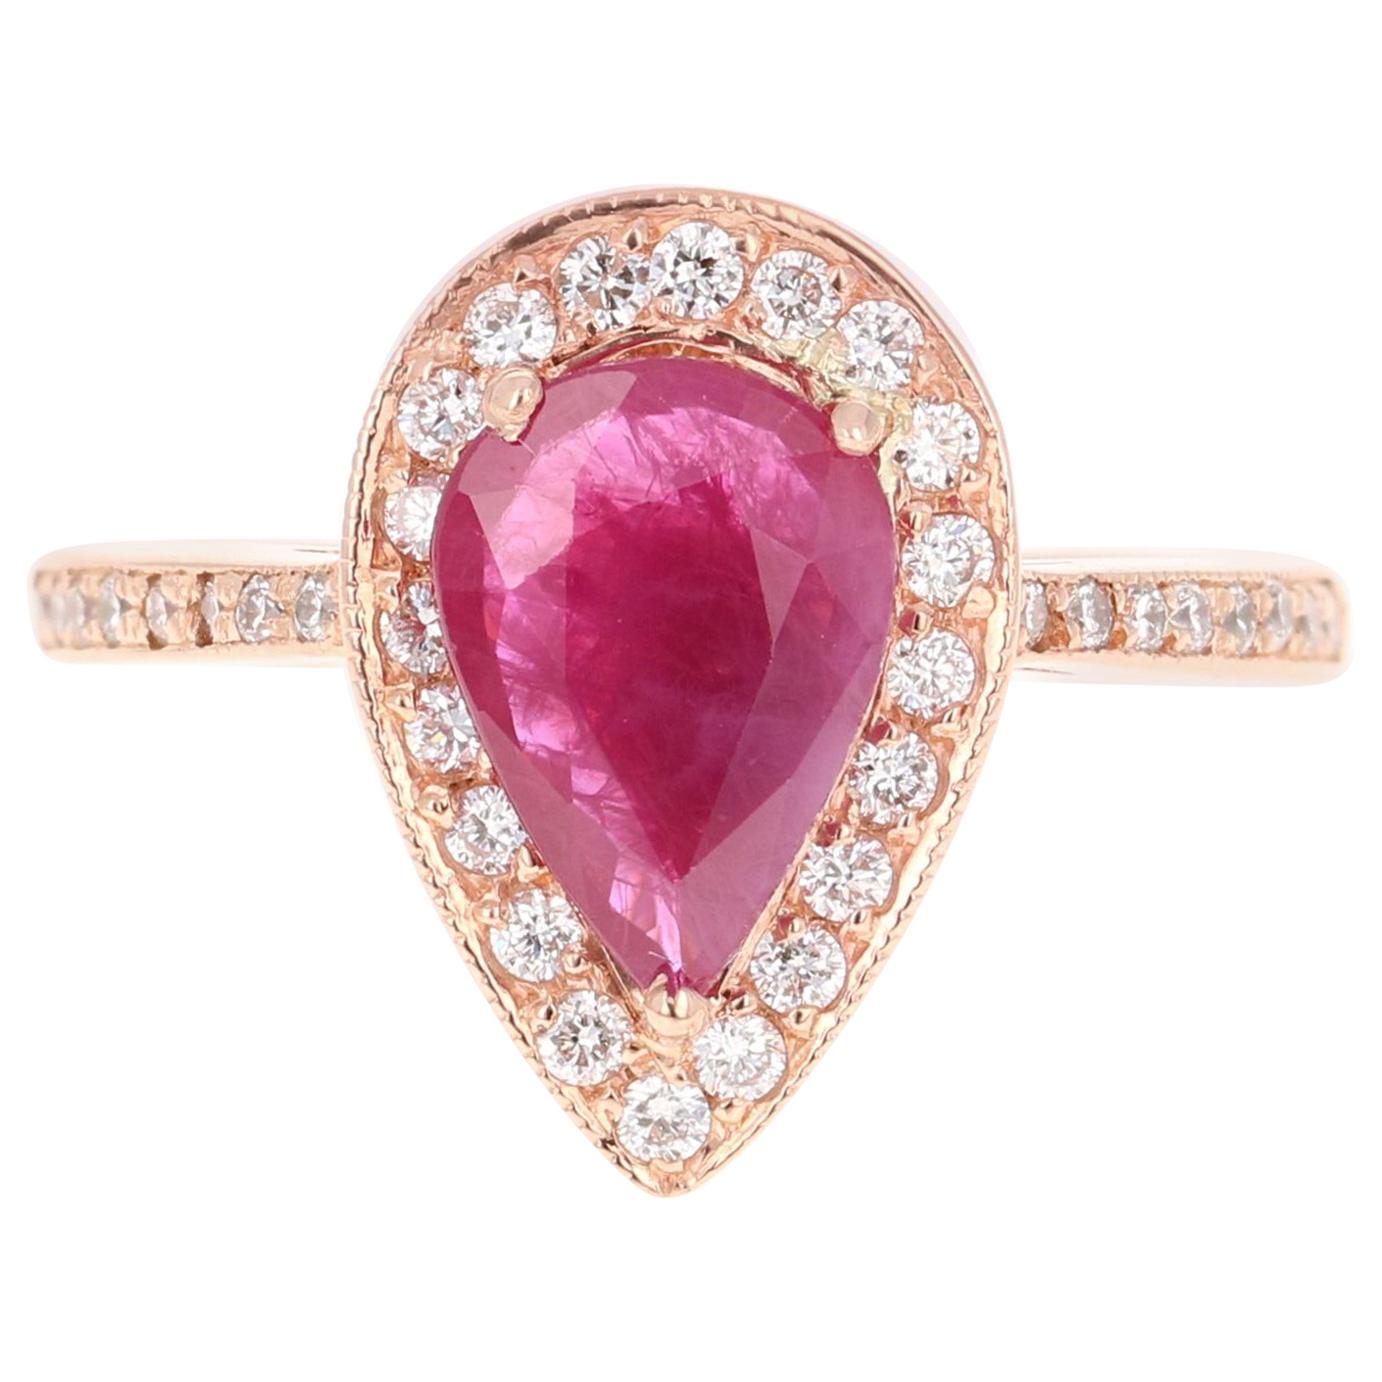 2.24 Carat Pear Cut Ruby Diamond 18 Karat Rose Gold Engagement Ring